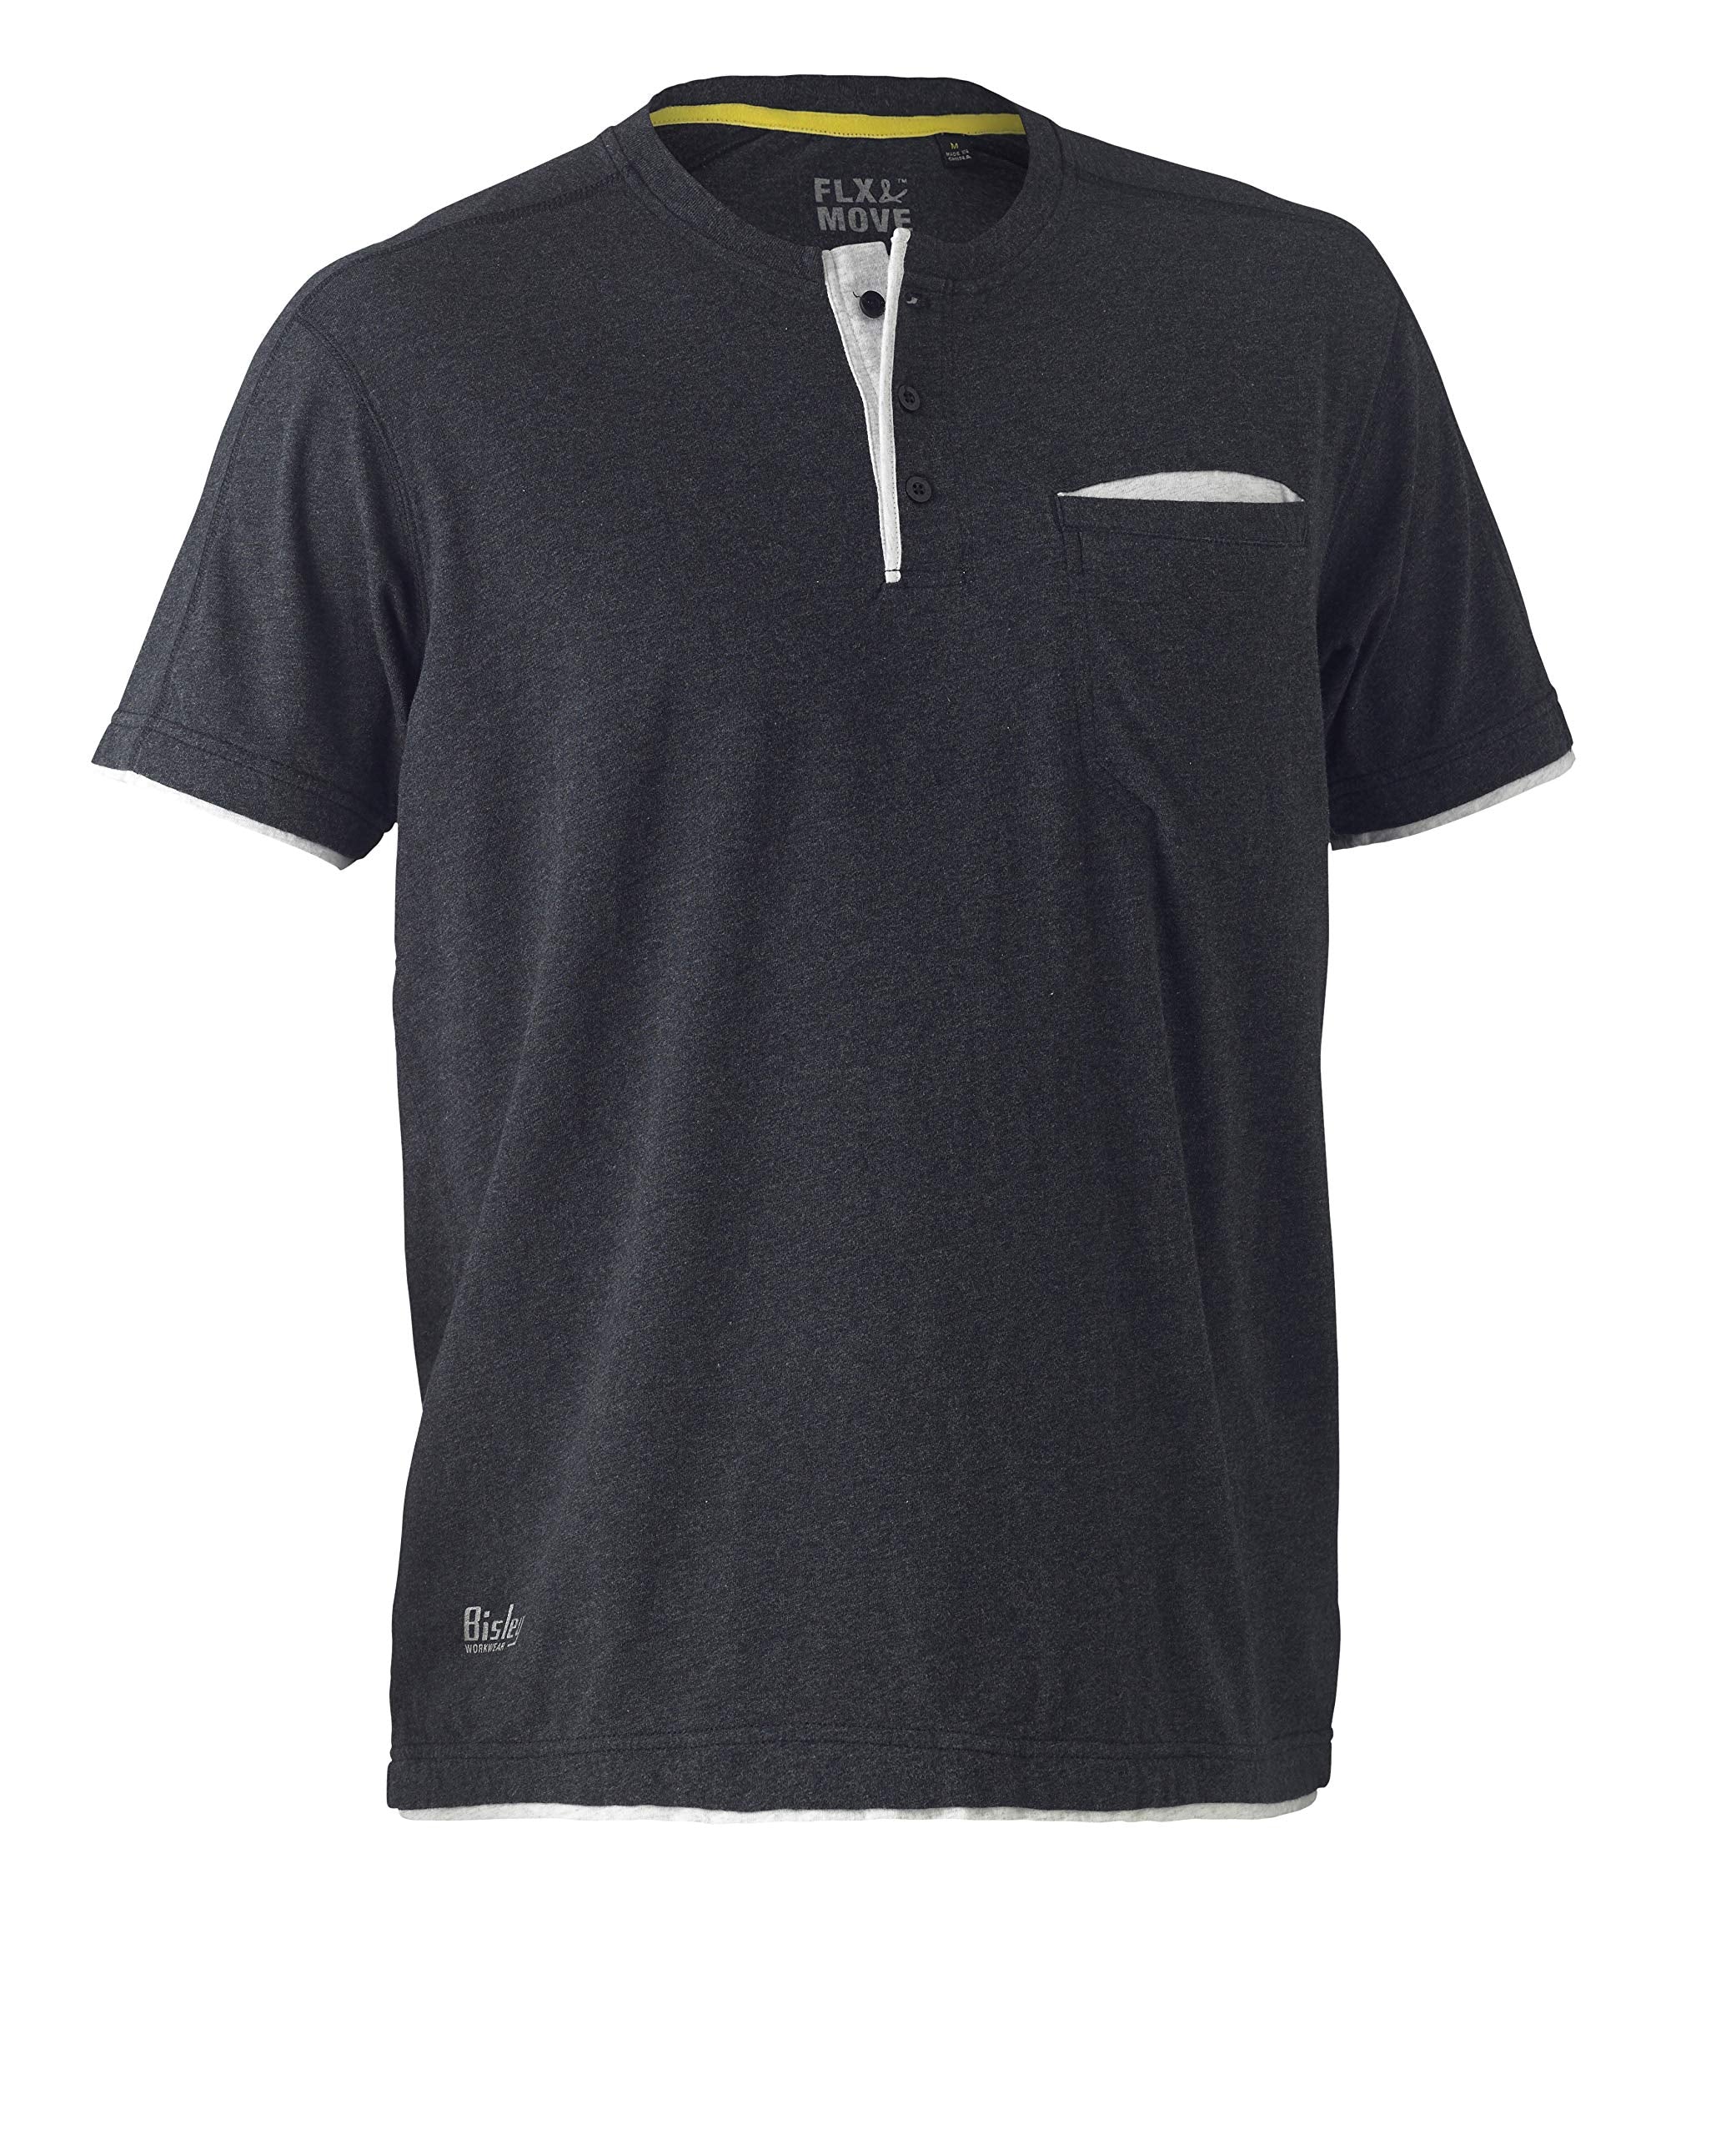 Flex & Move Cotton Henley T-Shirt Charcoal Marle (BCCG) L